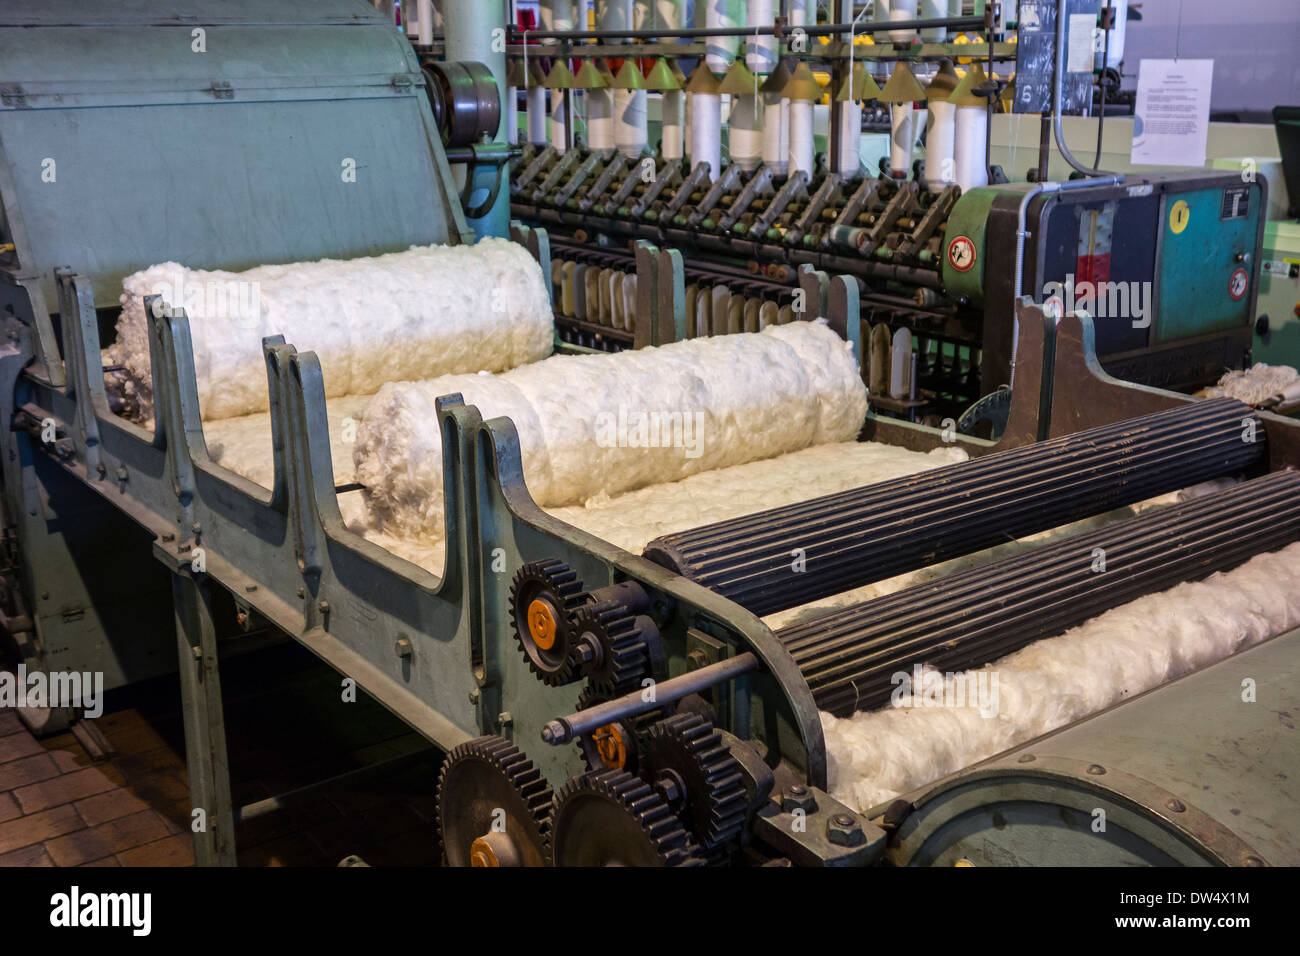 Macchina di gramolazione / gramola separazione delle impurezze dalle materie di fibre di cotone in cotone mulino a MIAT museum, Gand, Belgio Foto Stock